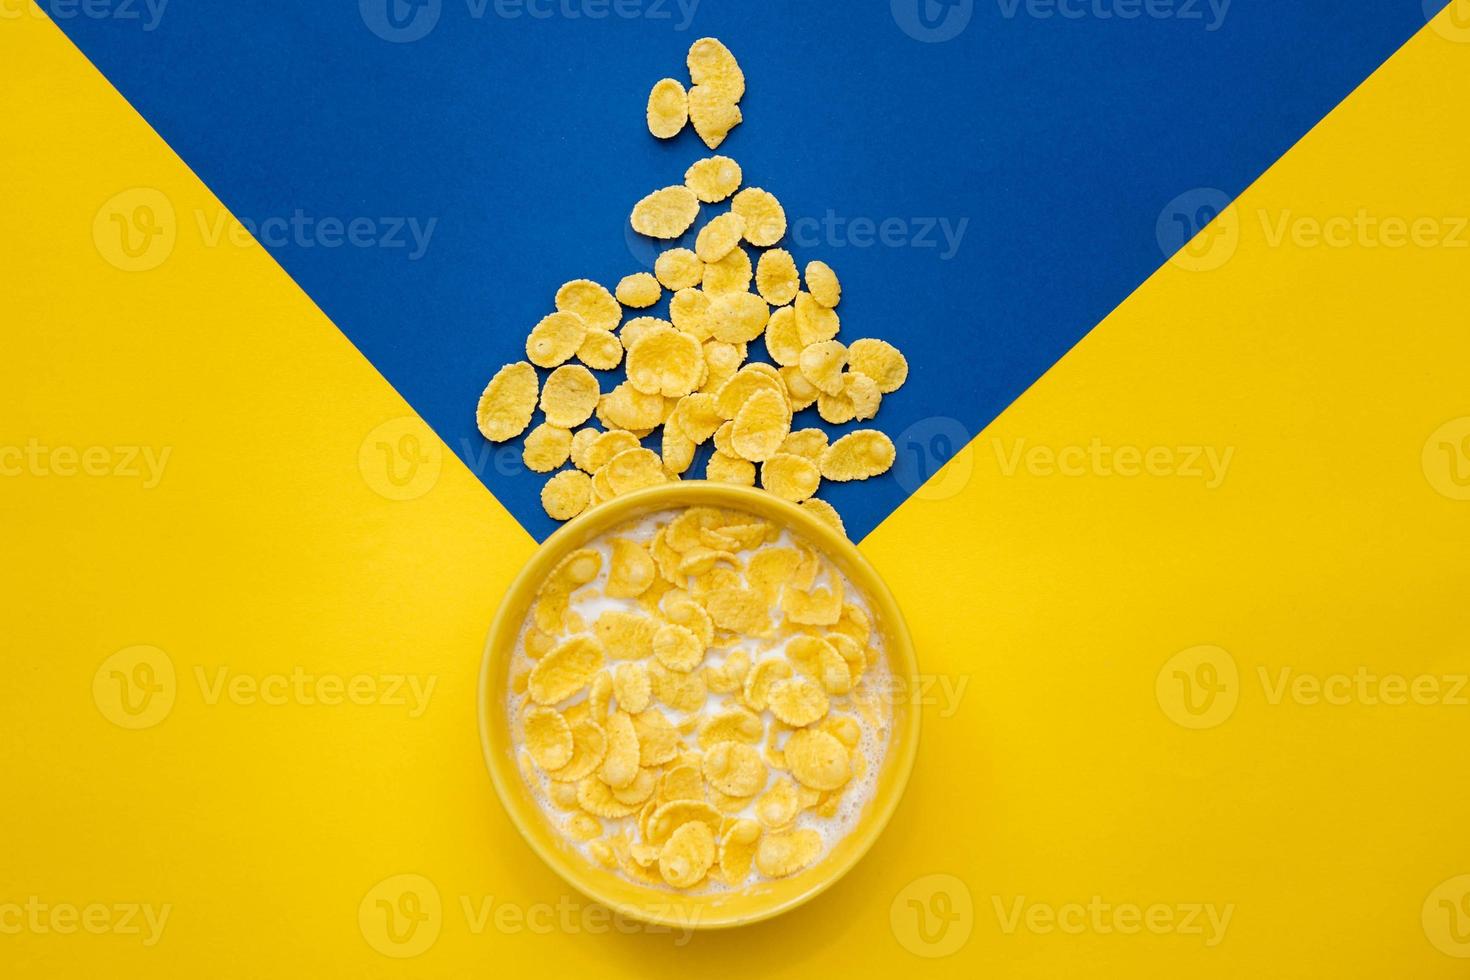 cornflakes con latte nella ciotola gialla su sfondo blu e giallo foto